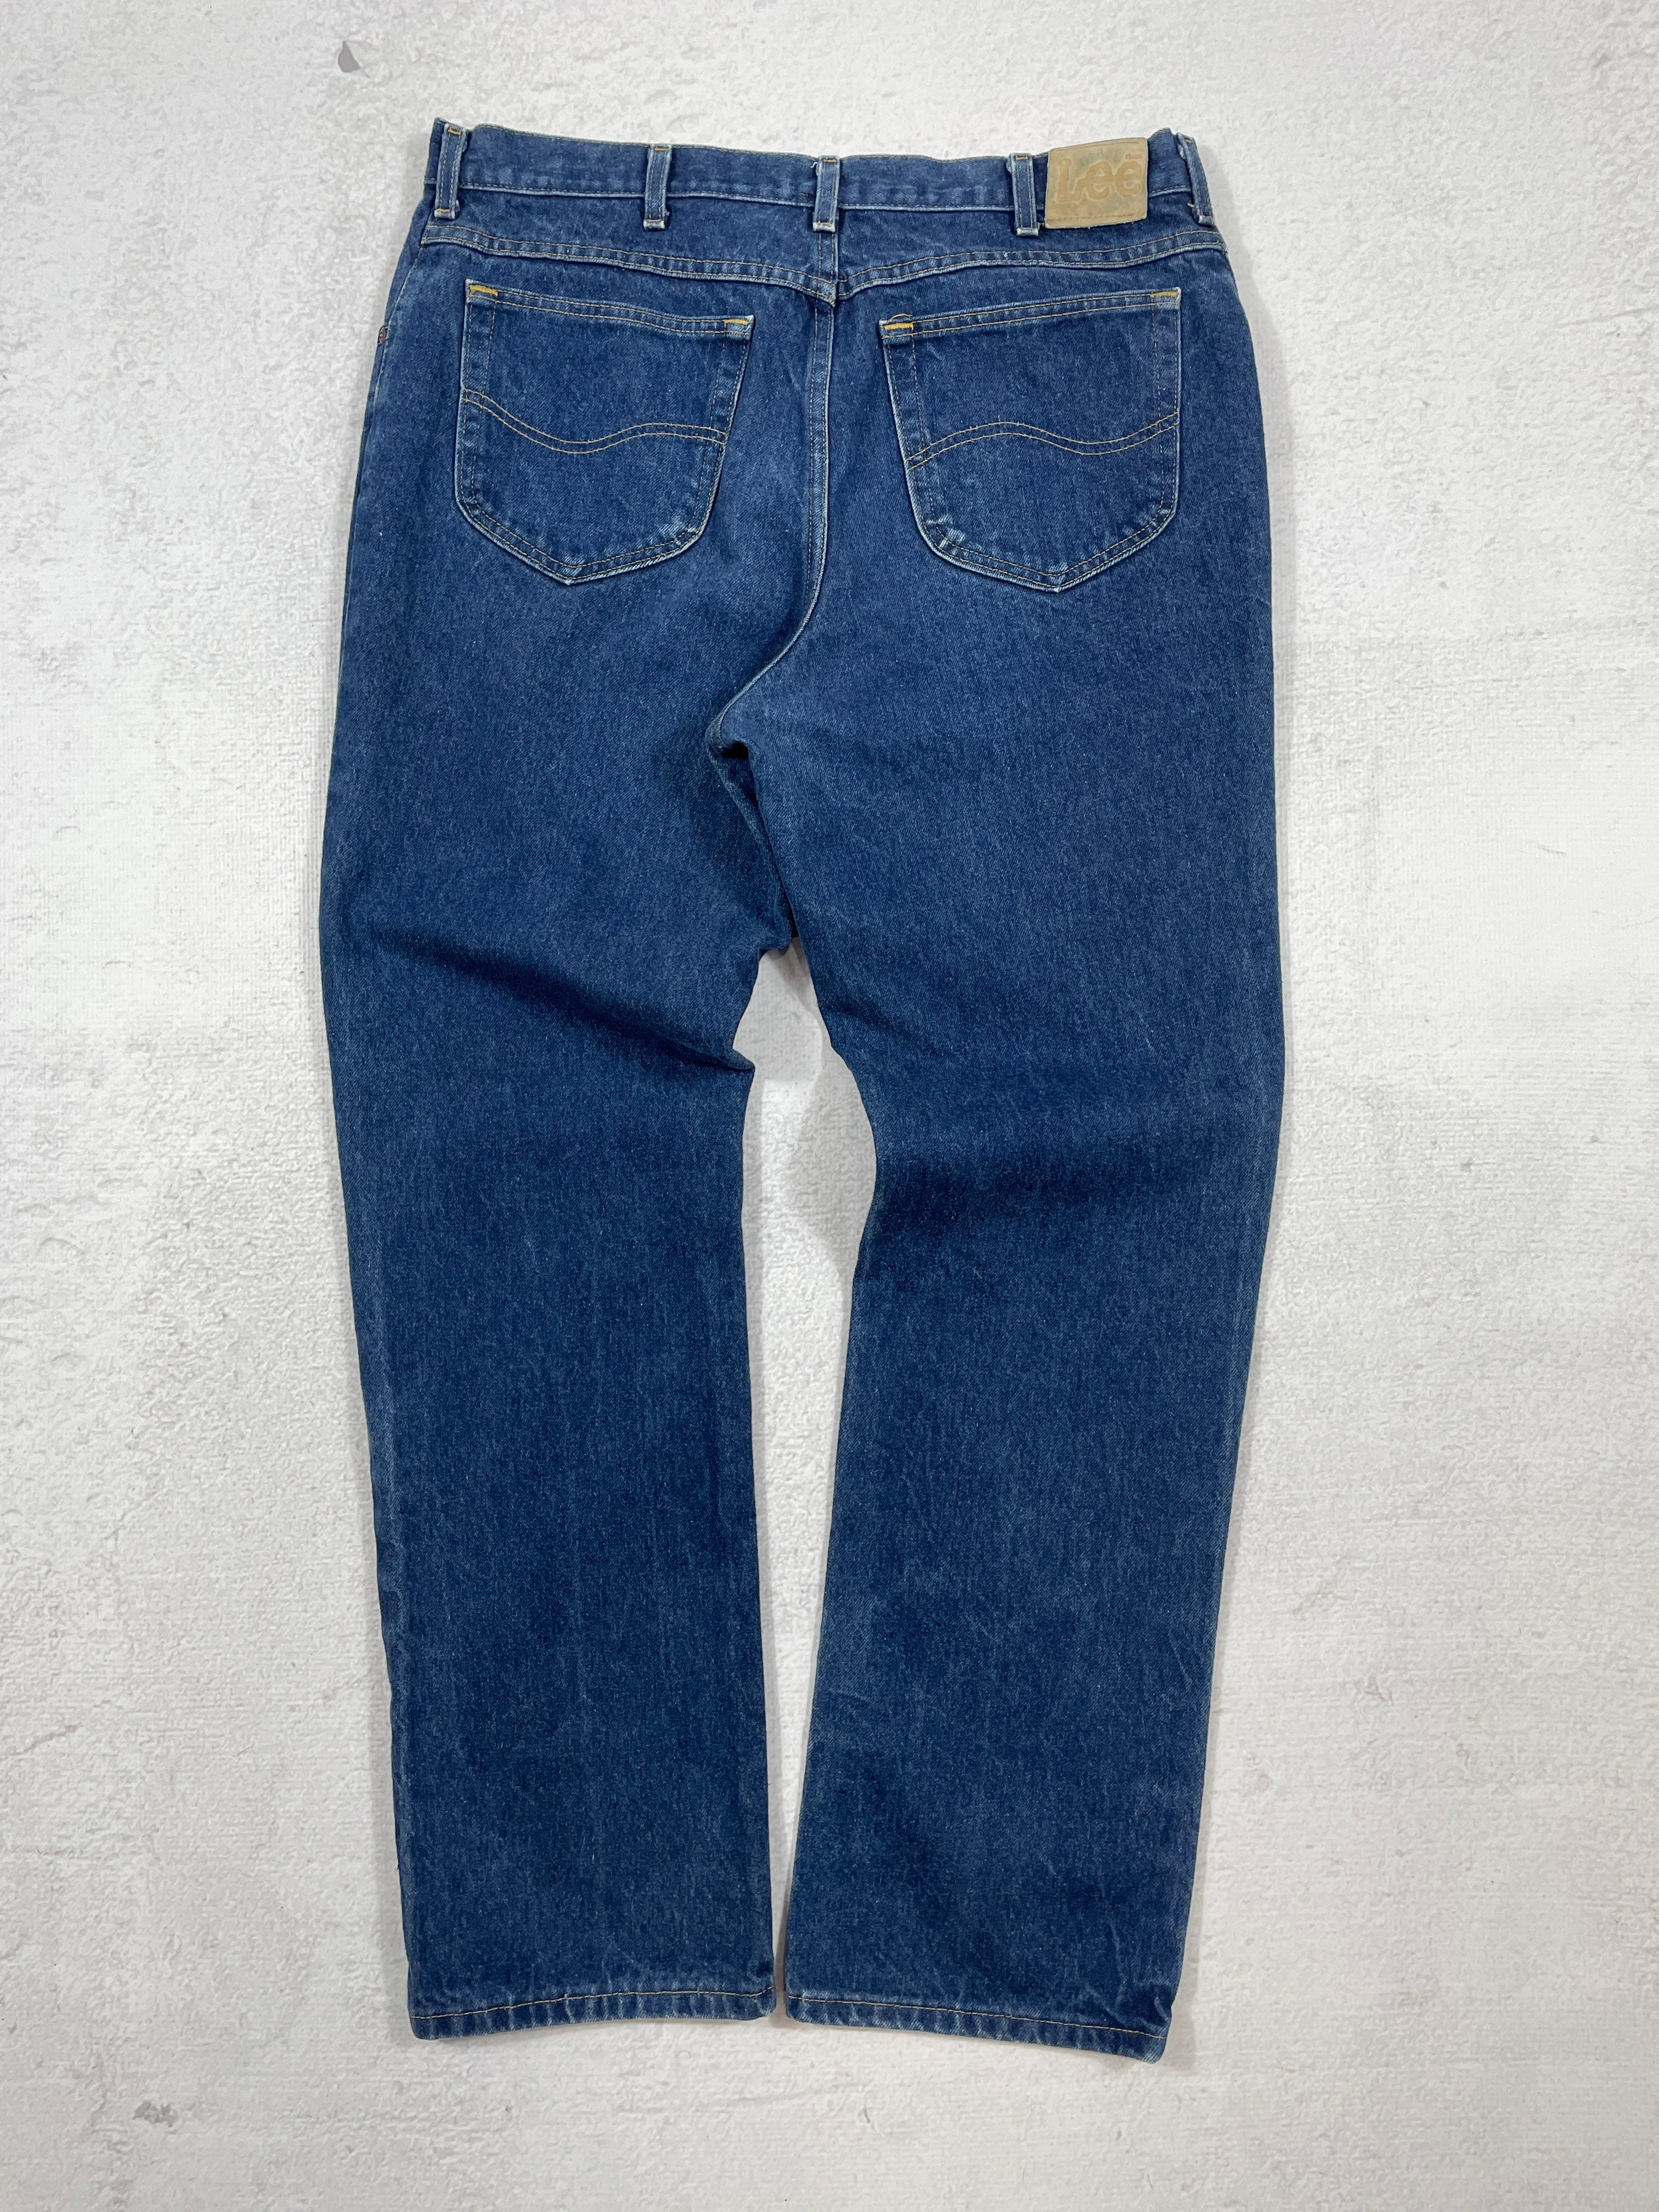 Vintage Lee Jeans - Men's 36Wx32L